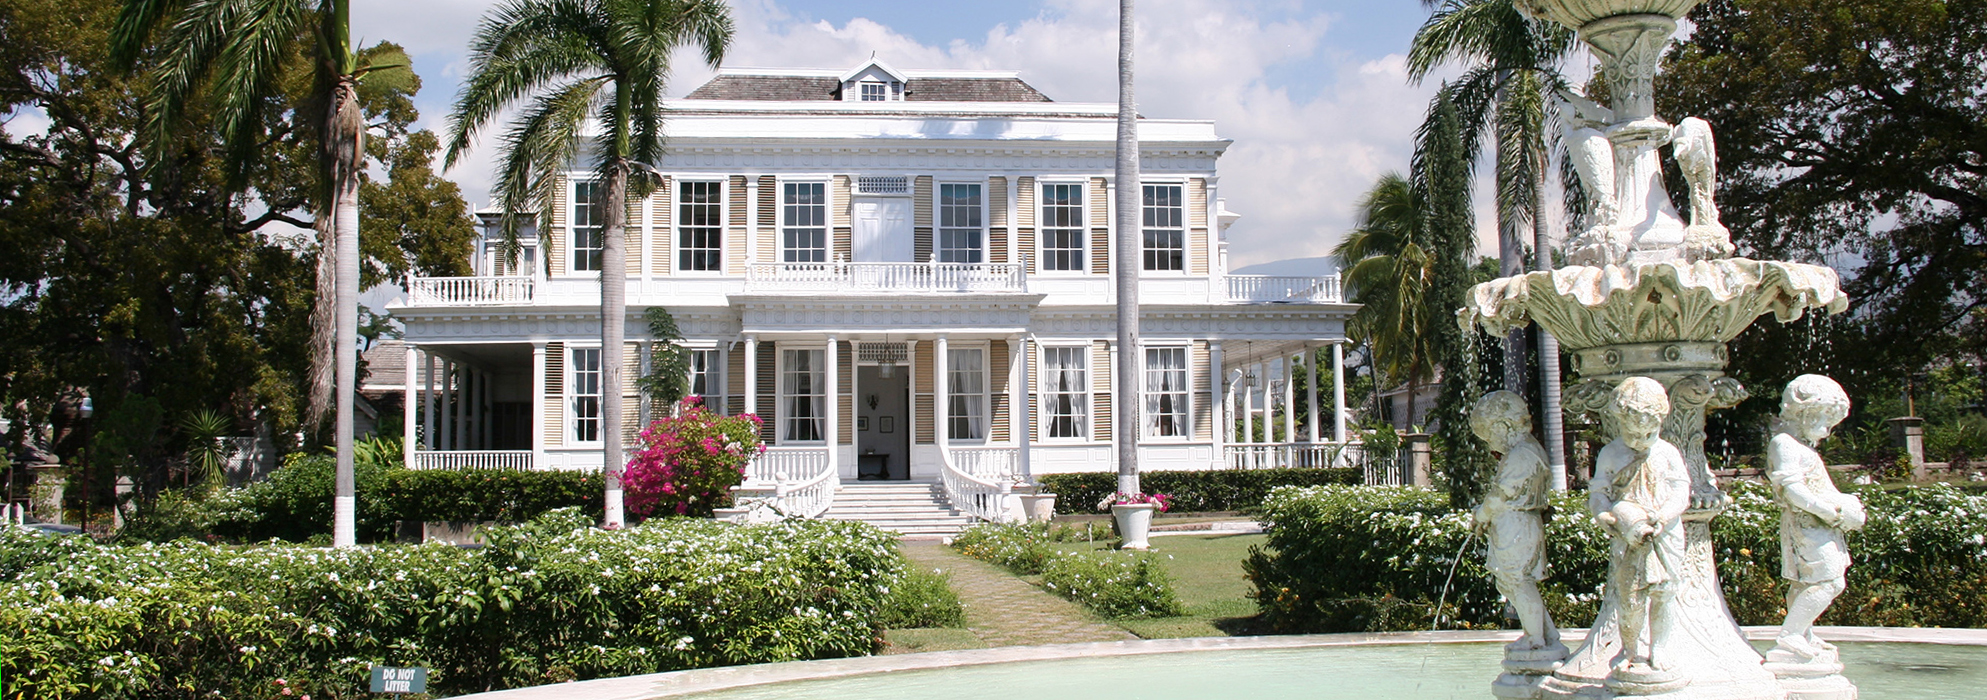 Devon House in Kingston mit Springbrunnen im Vordergrund